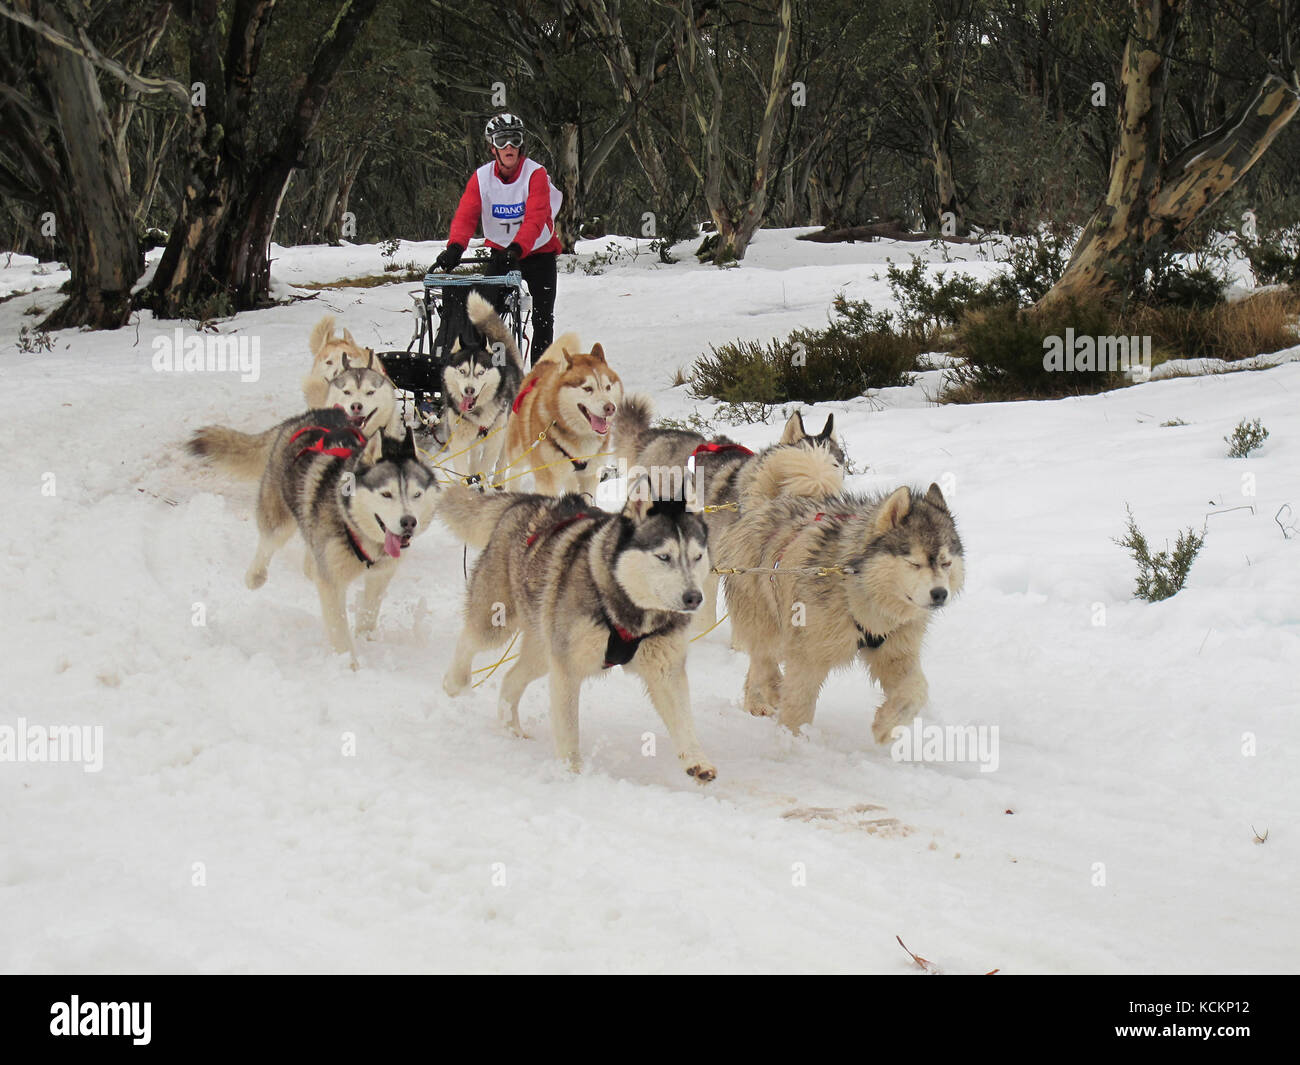 Course de chiens de traîneau, Dinner Plain près de Mount Hotham, dans le nord-est de Victoria, en Australie Banque D'Images